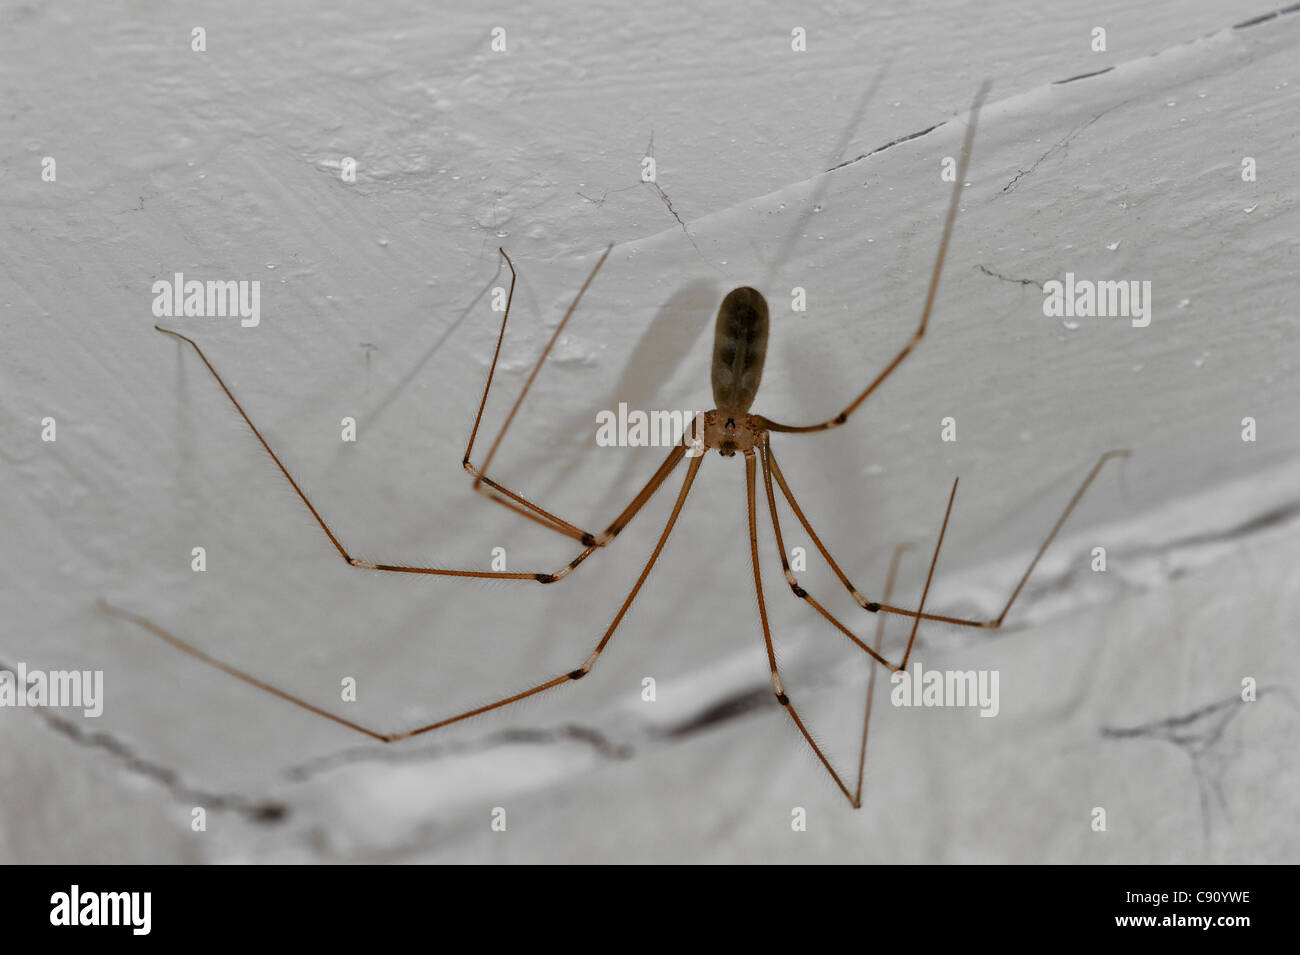 Bodega spider / daddy longlegs (Pholcus phalangioides) en casa, Bélgica Foto de stock